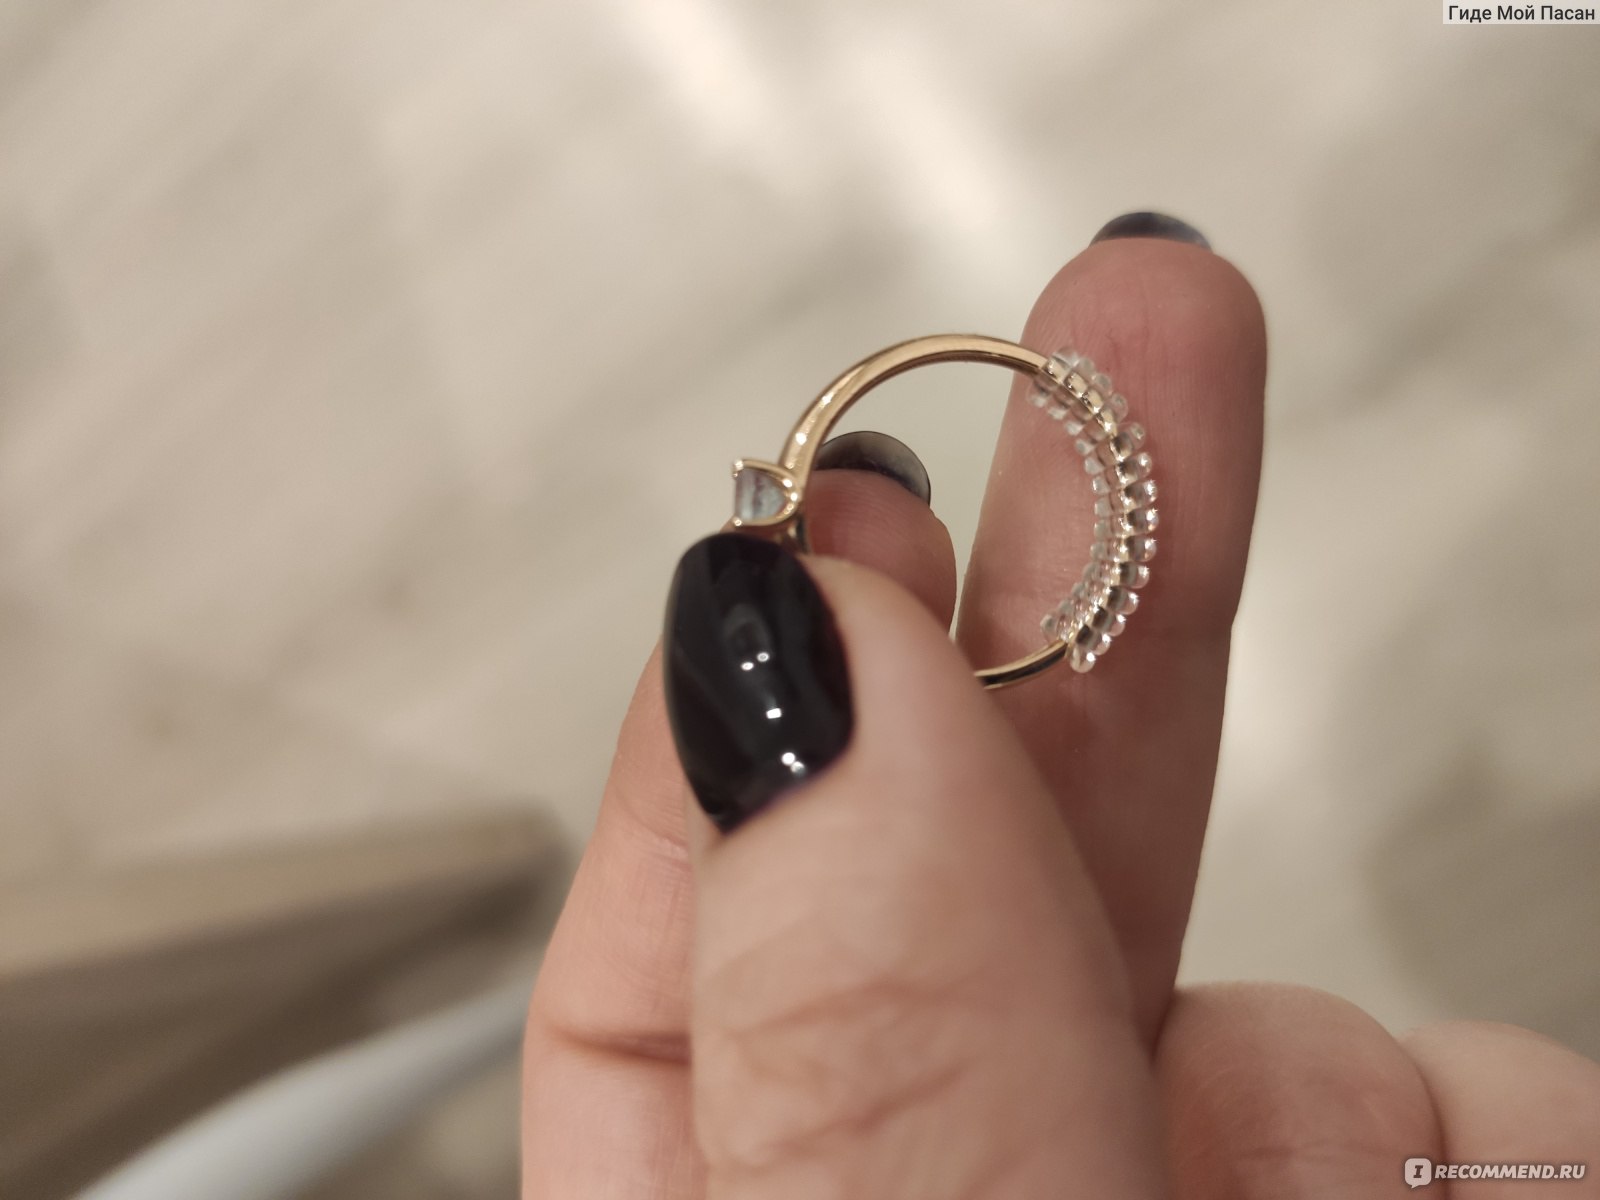 Как раскатать кольцо в домашних условиях